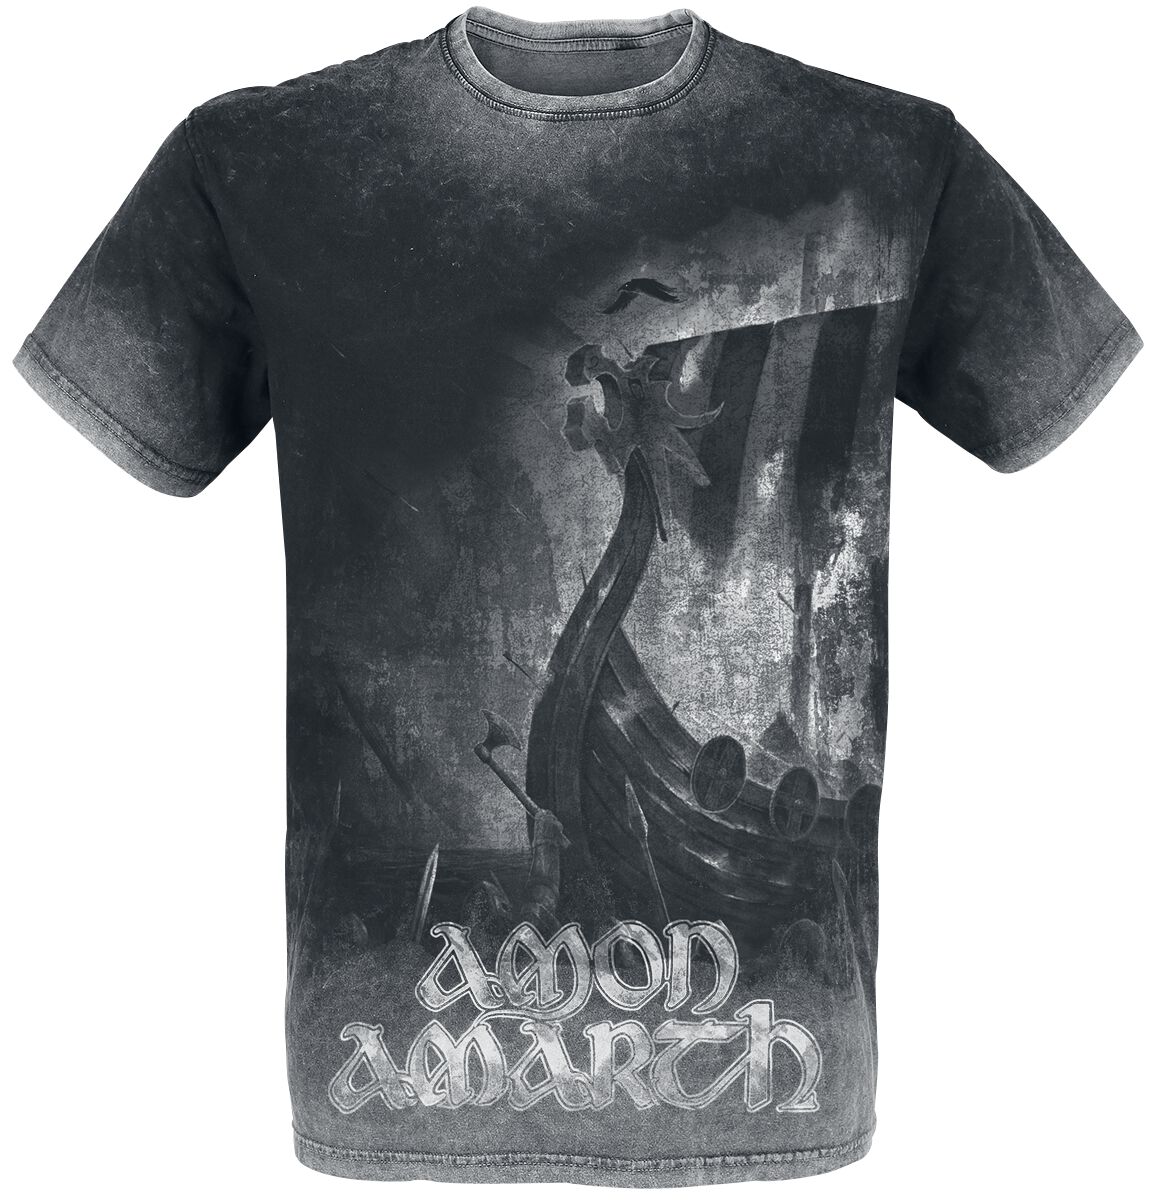 Amon Amarth T-Shirt - One Thousand Burning Arrows - M bis 4XL - für Männer - Größe 4XL - charcoal  - EMP exklusives Merchandise!